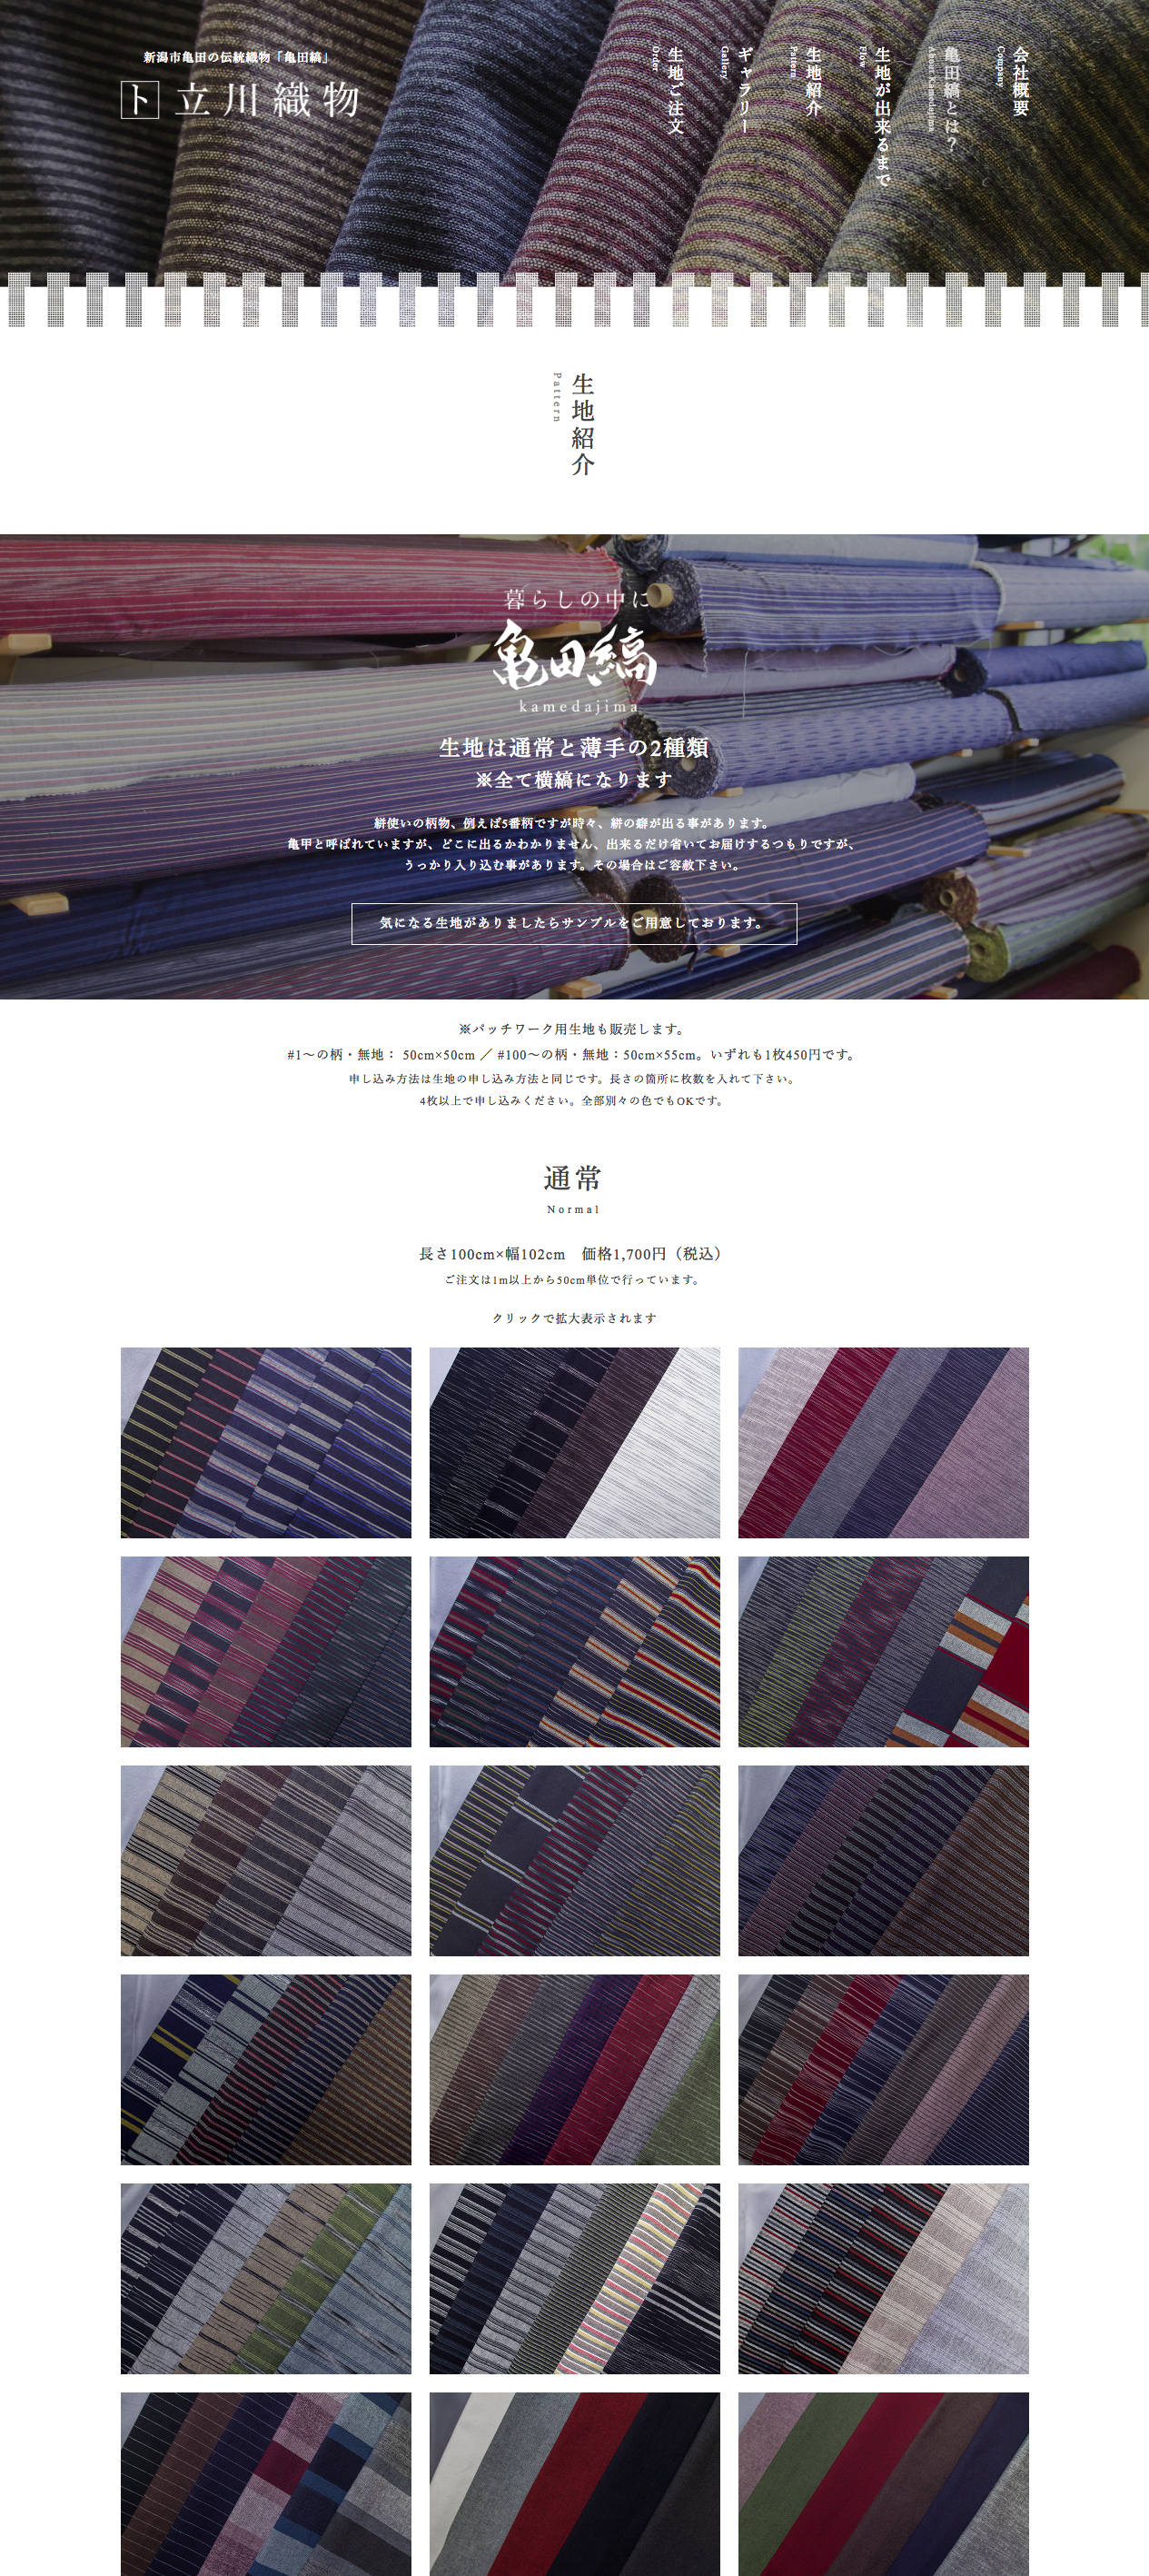 立川織物工場 様のホームページ